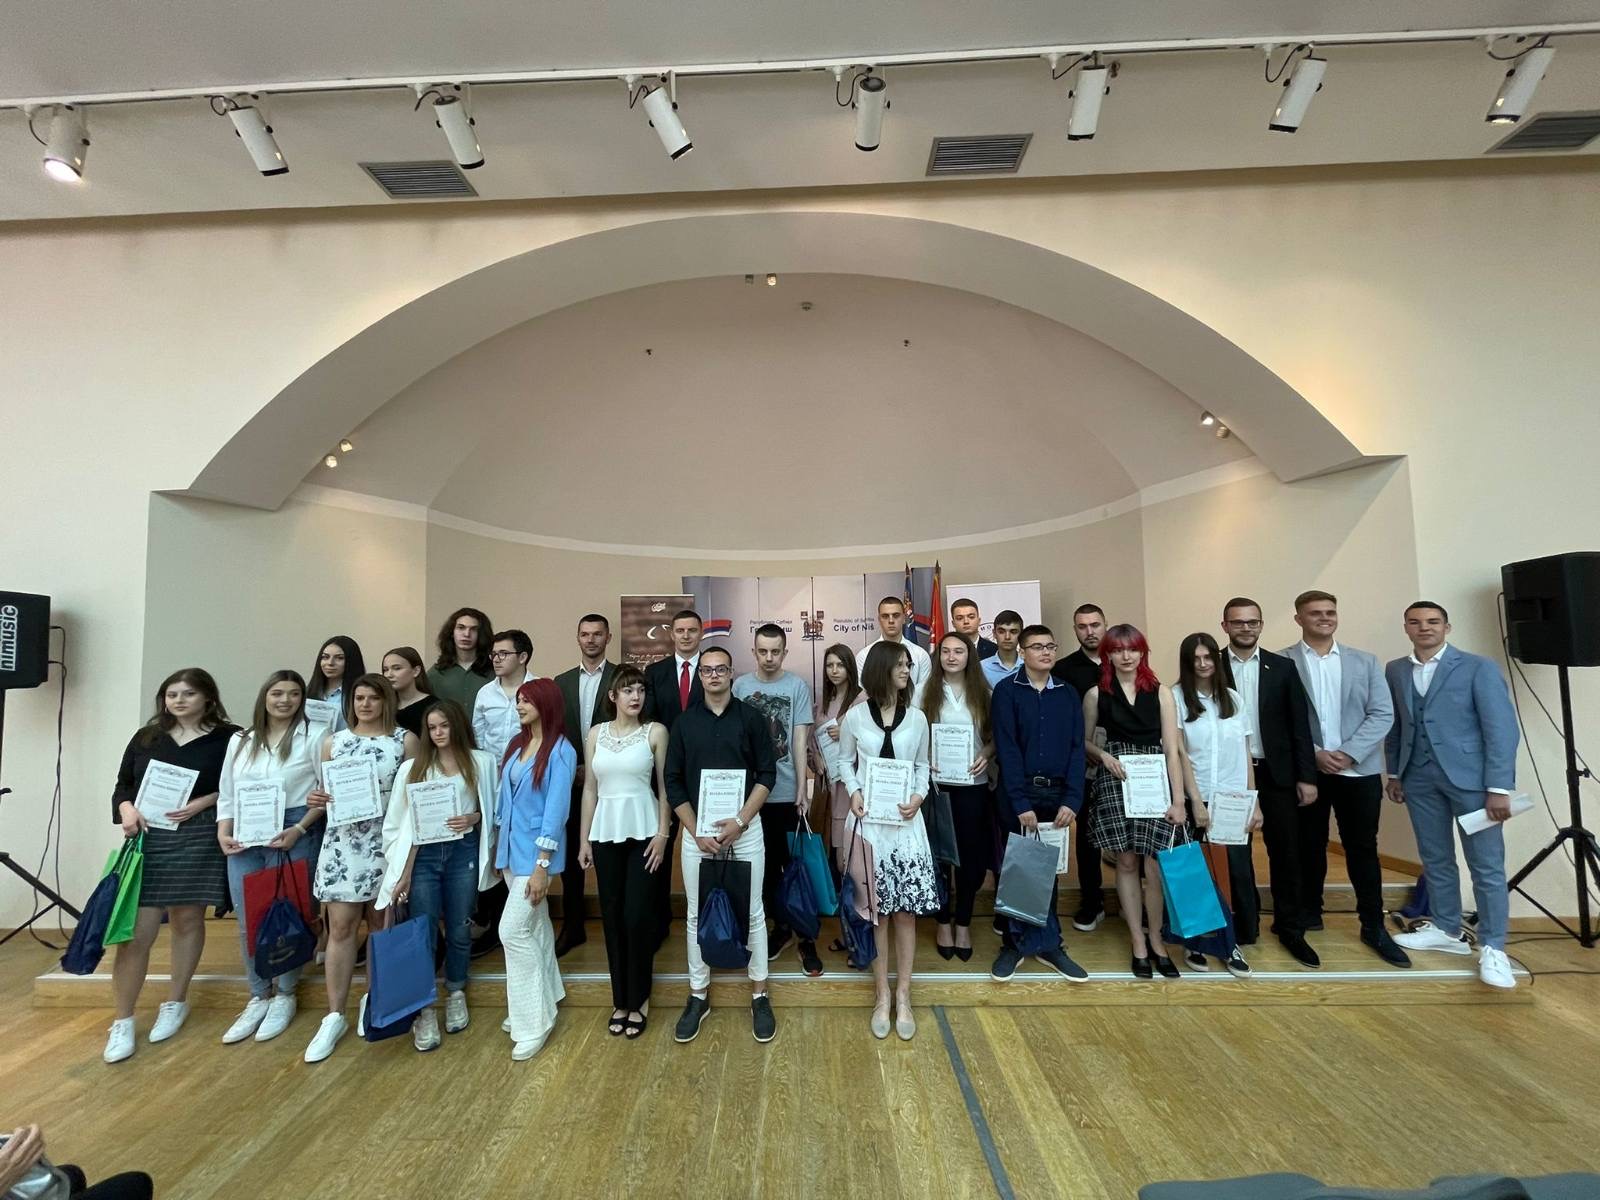 Članovi udruženja ,,Nacionalna inteligencija-NIT“ učestvovali su u dodeli nagrada najboljim srednjoškolcima u Nišu.